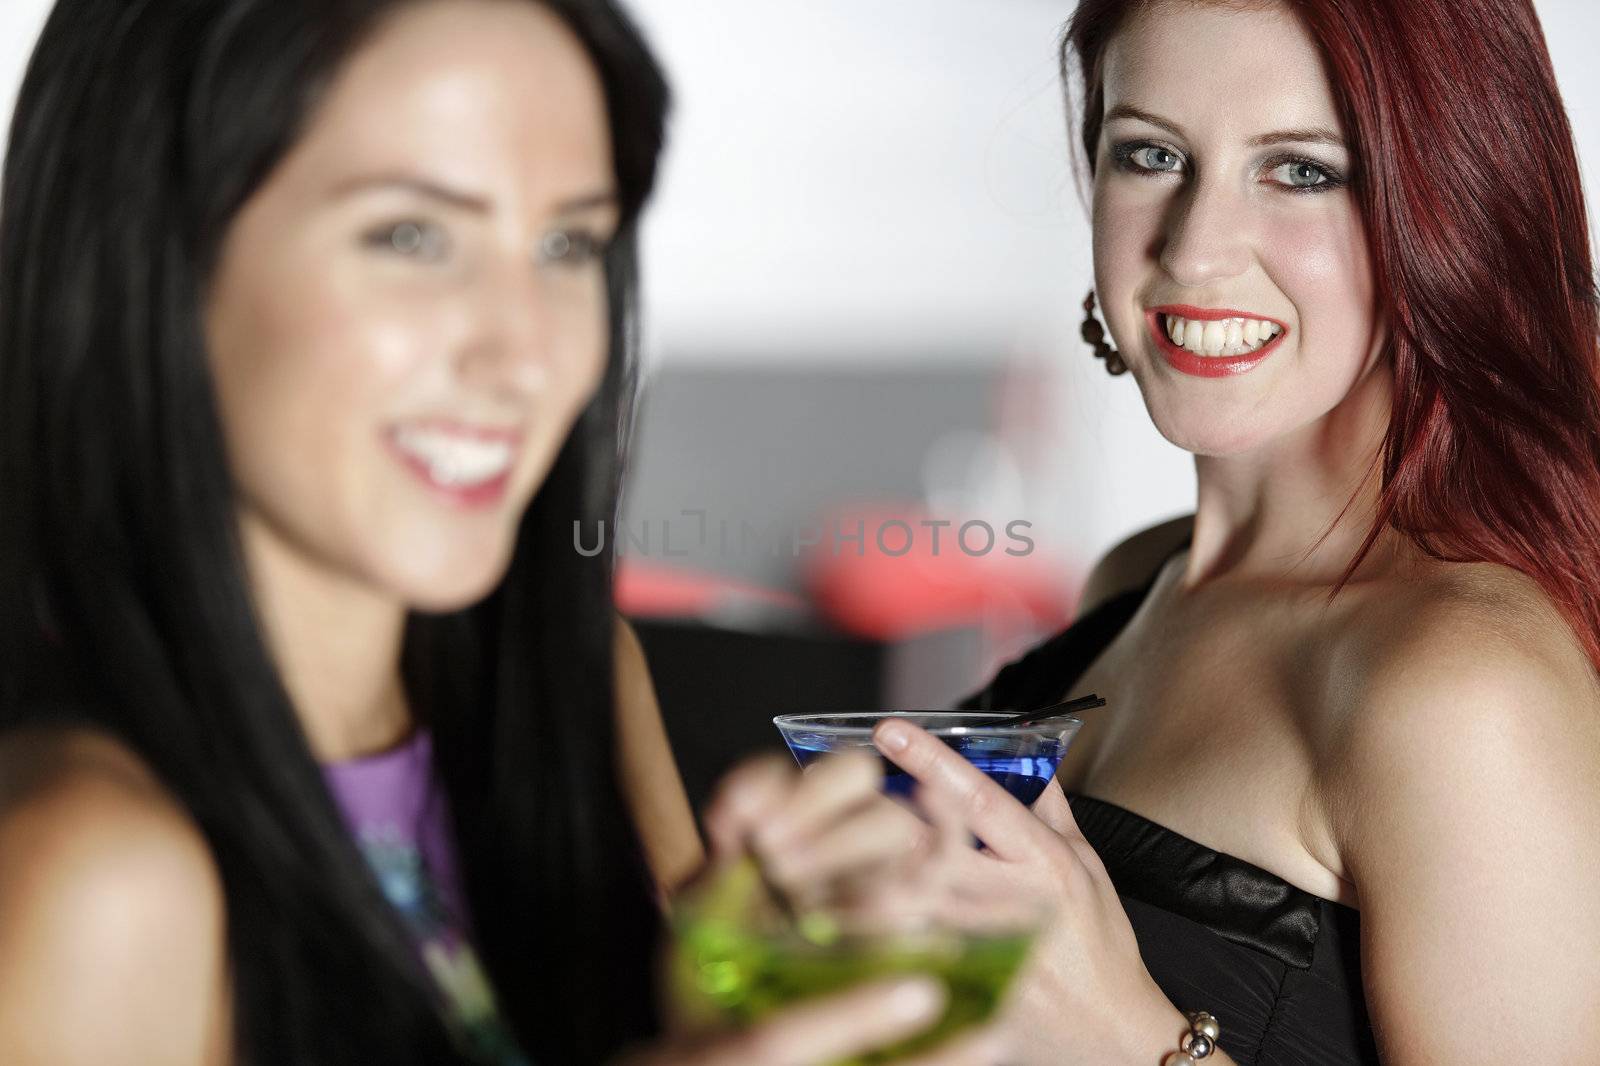 Two friends in a nightclub by studiofi